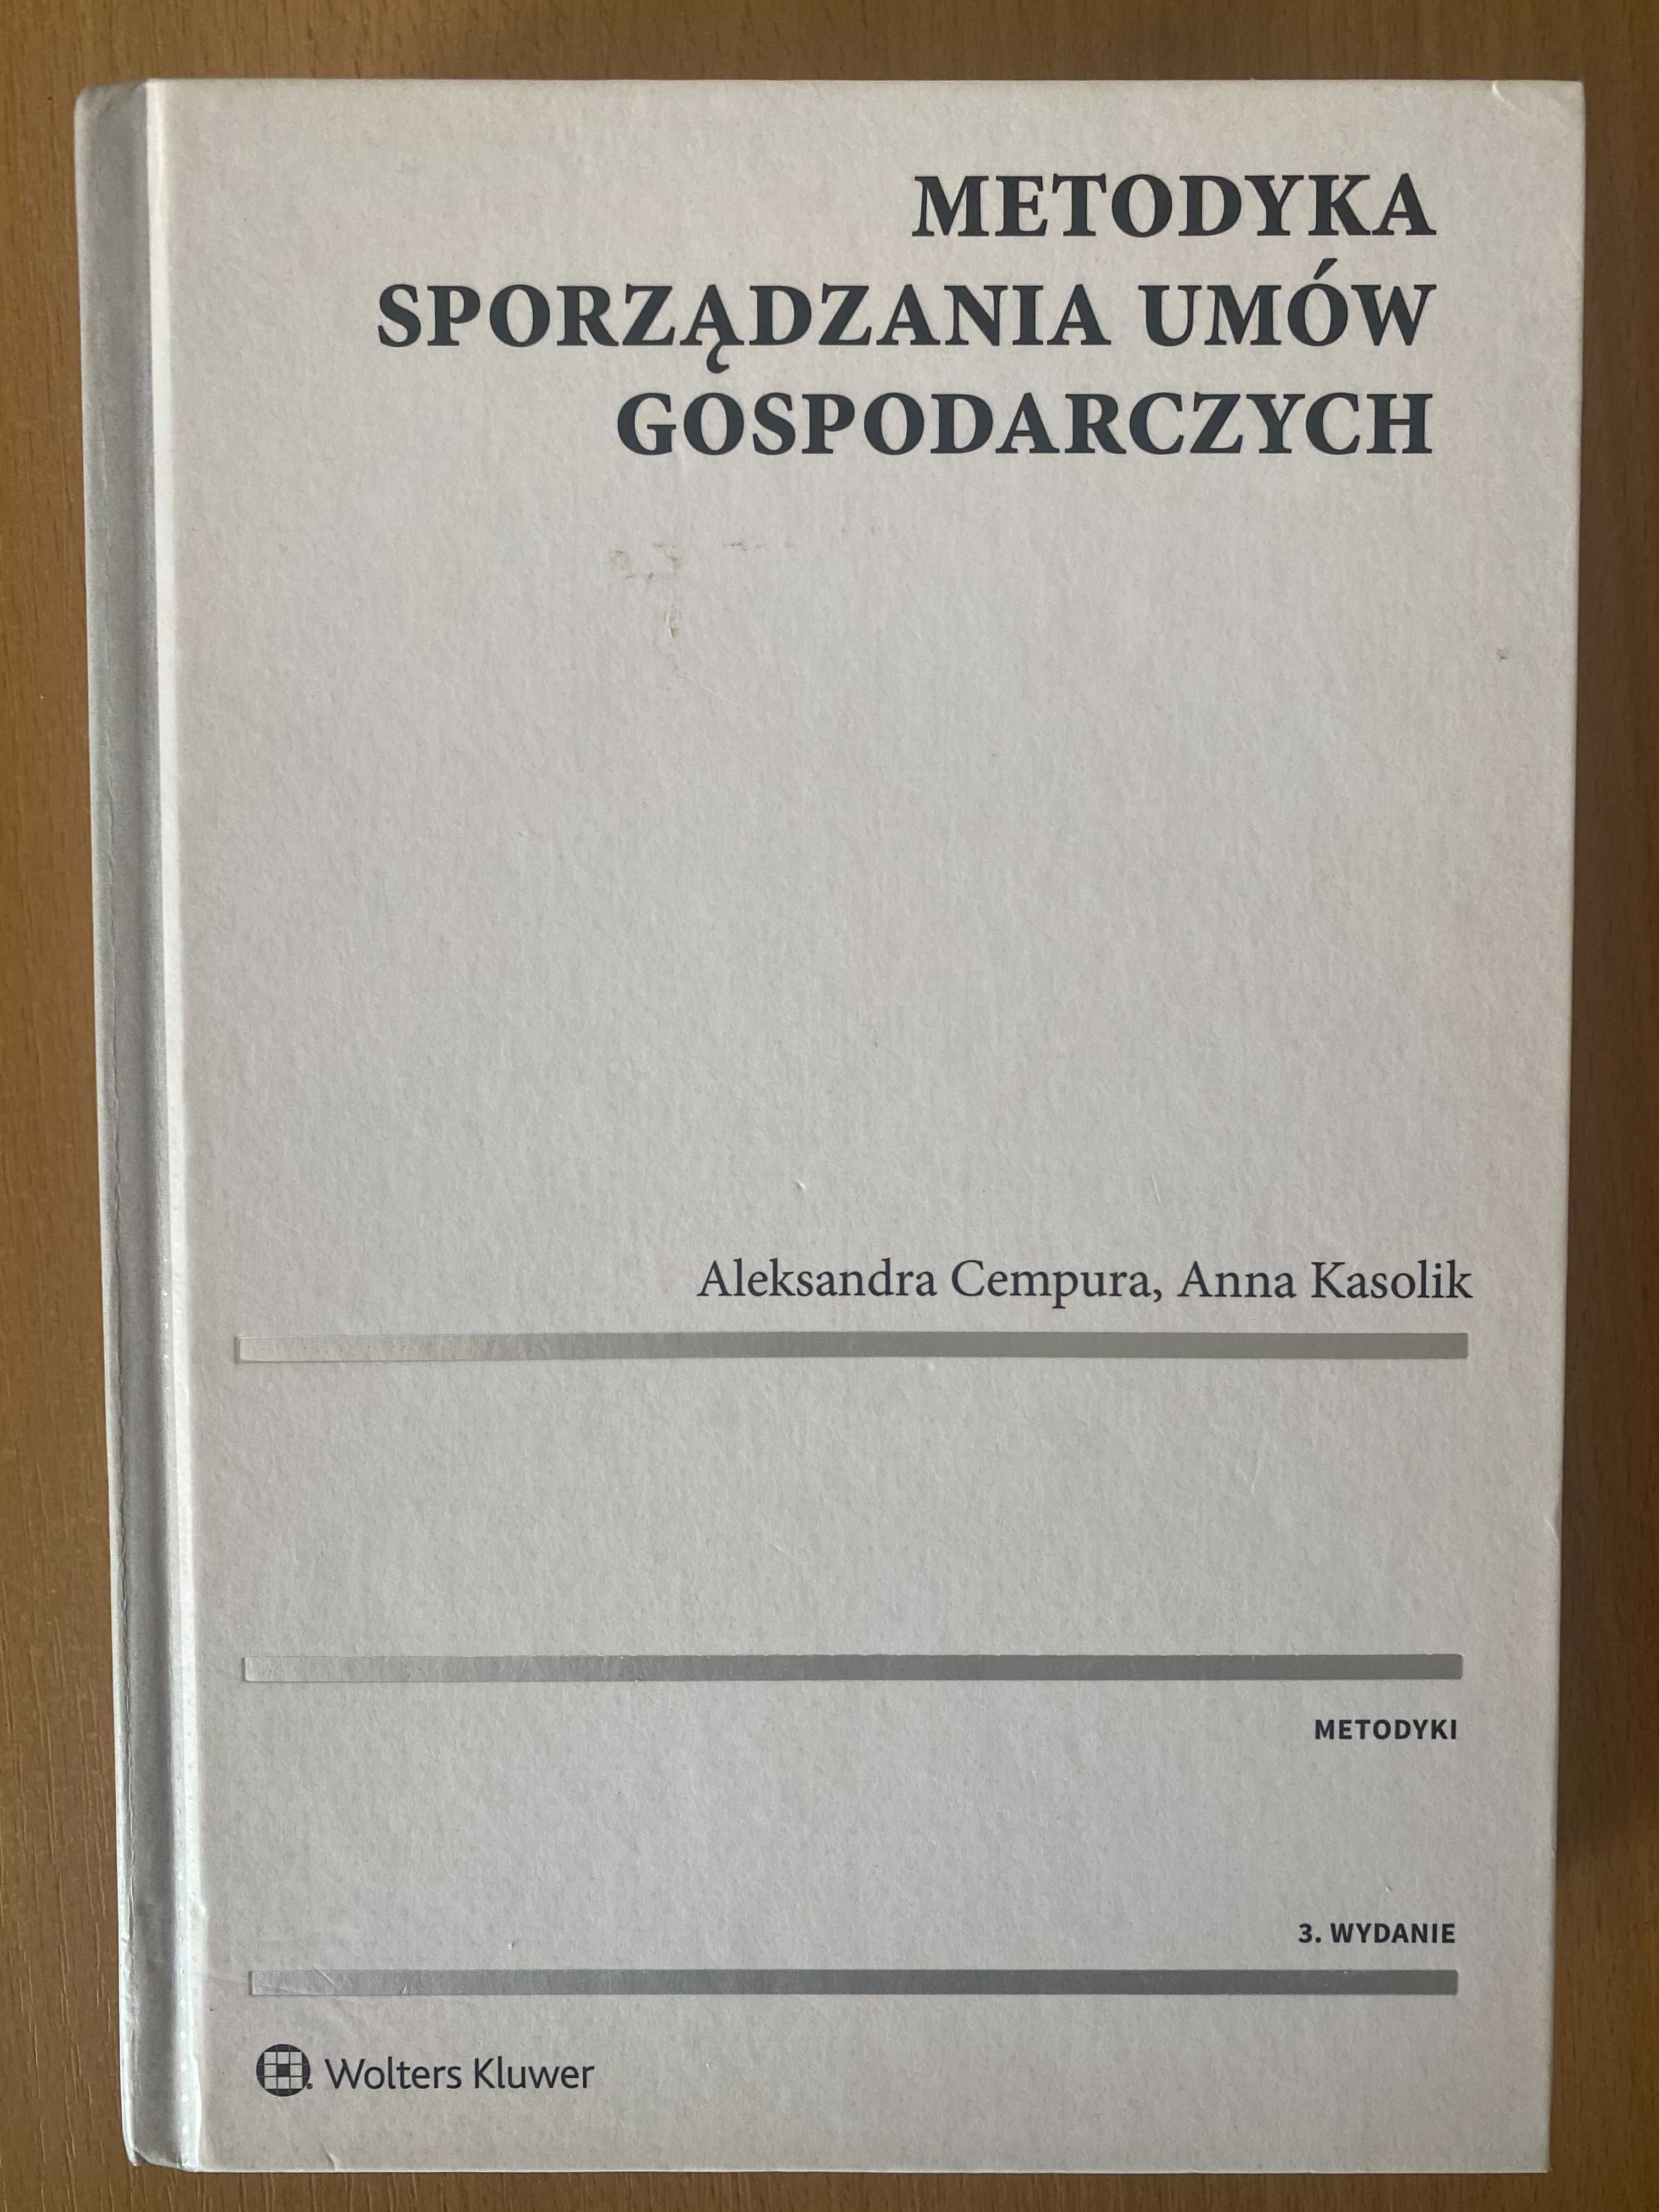 Metodyka sporządzania umów gospodarczych (wydanie 3) Warszawa/Wrocław